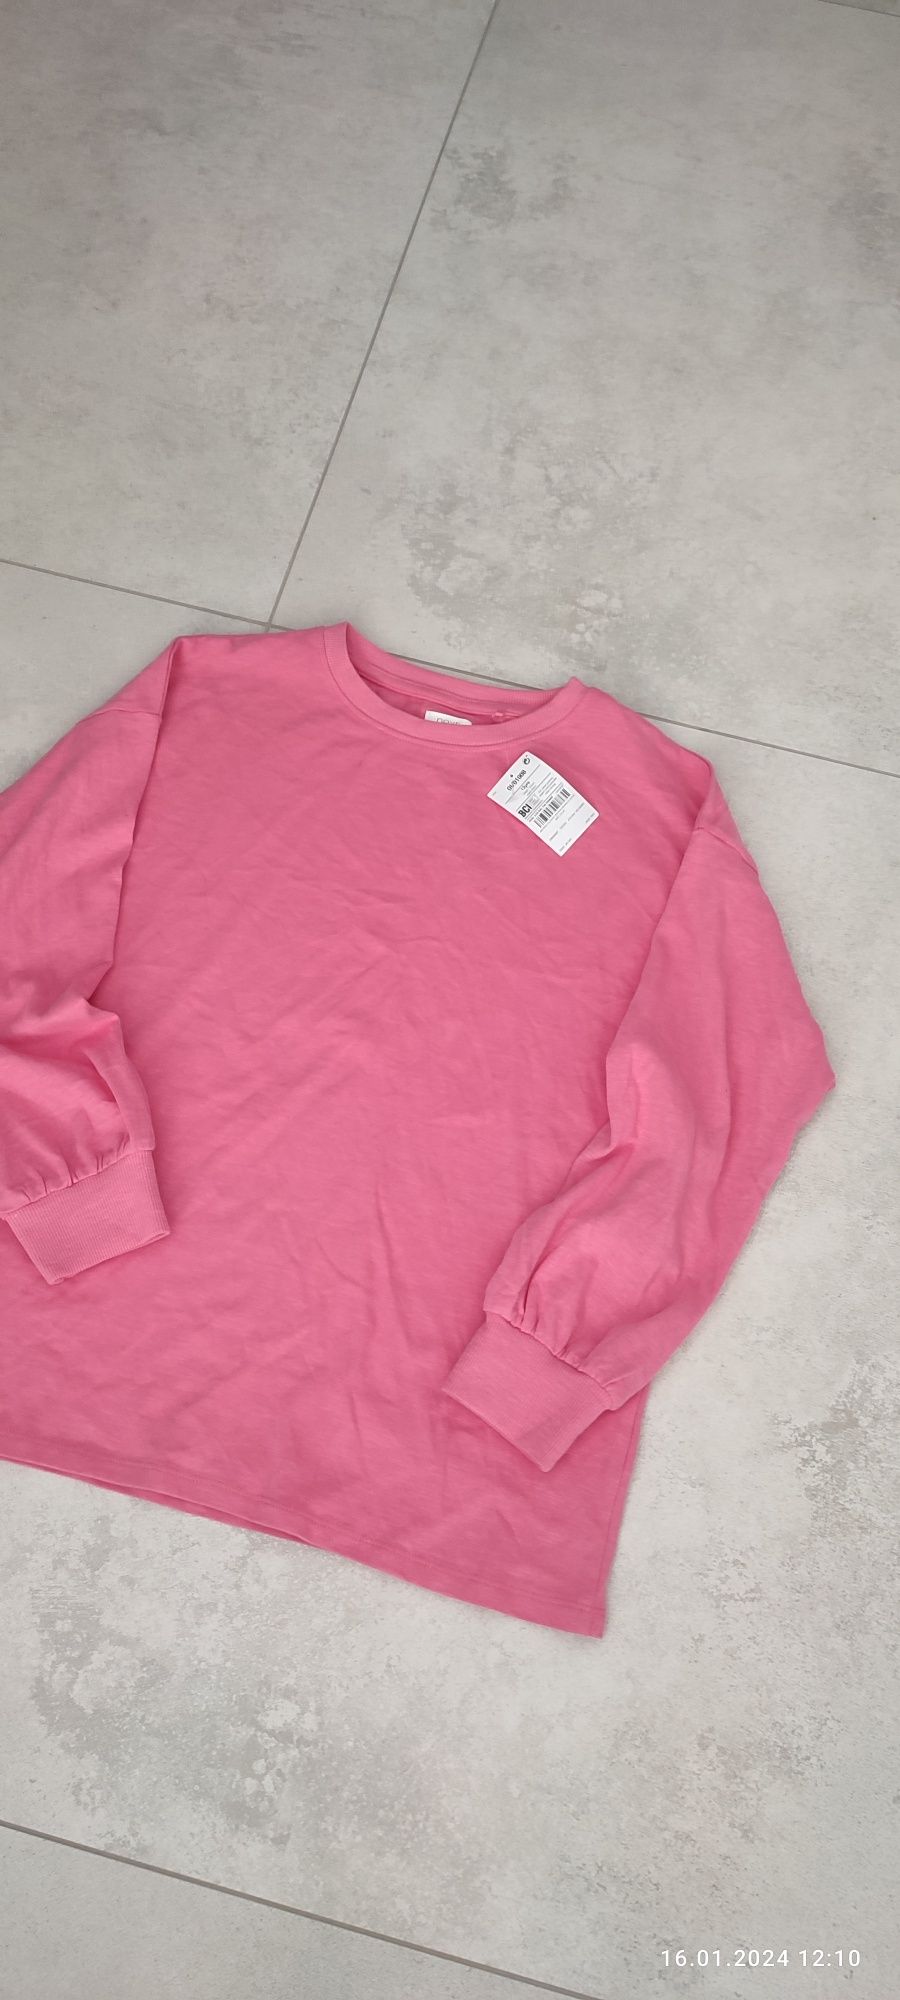 Różowa barbie koszulka bluza  dziewczęca 152 hm Zara next